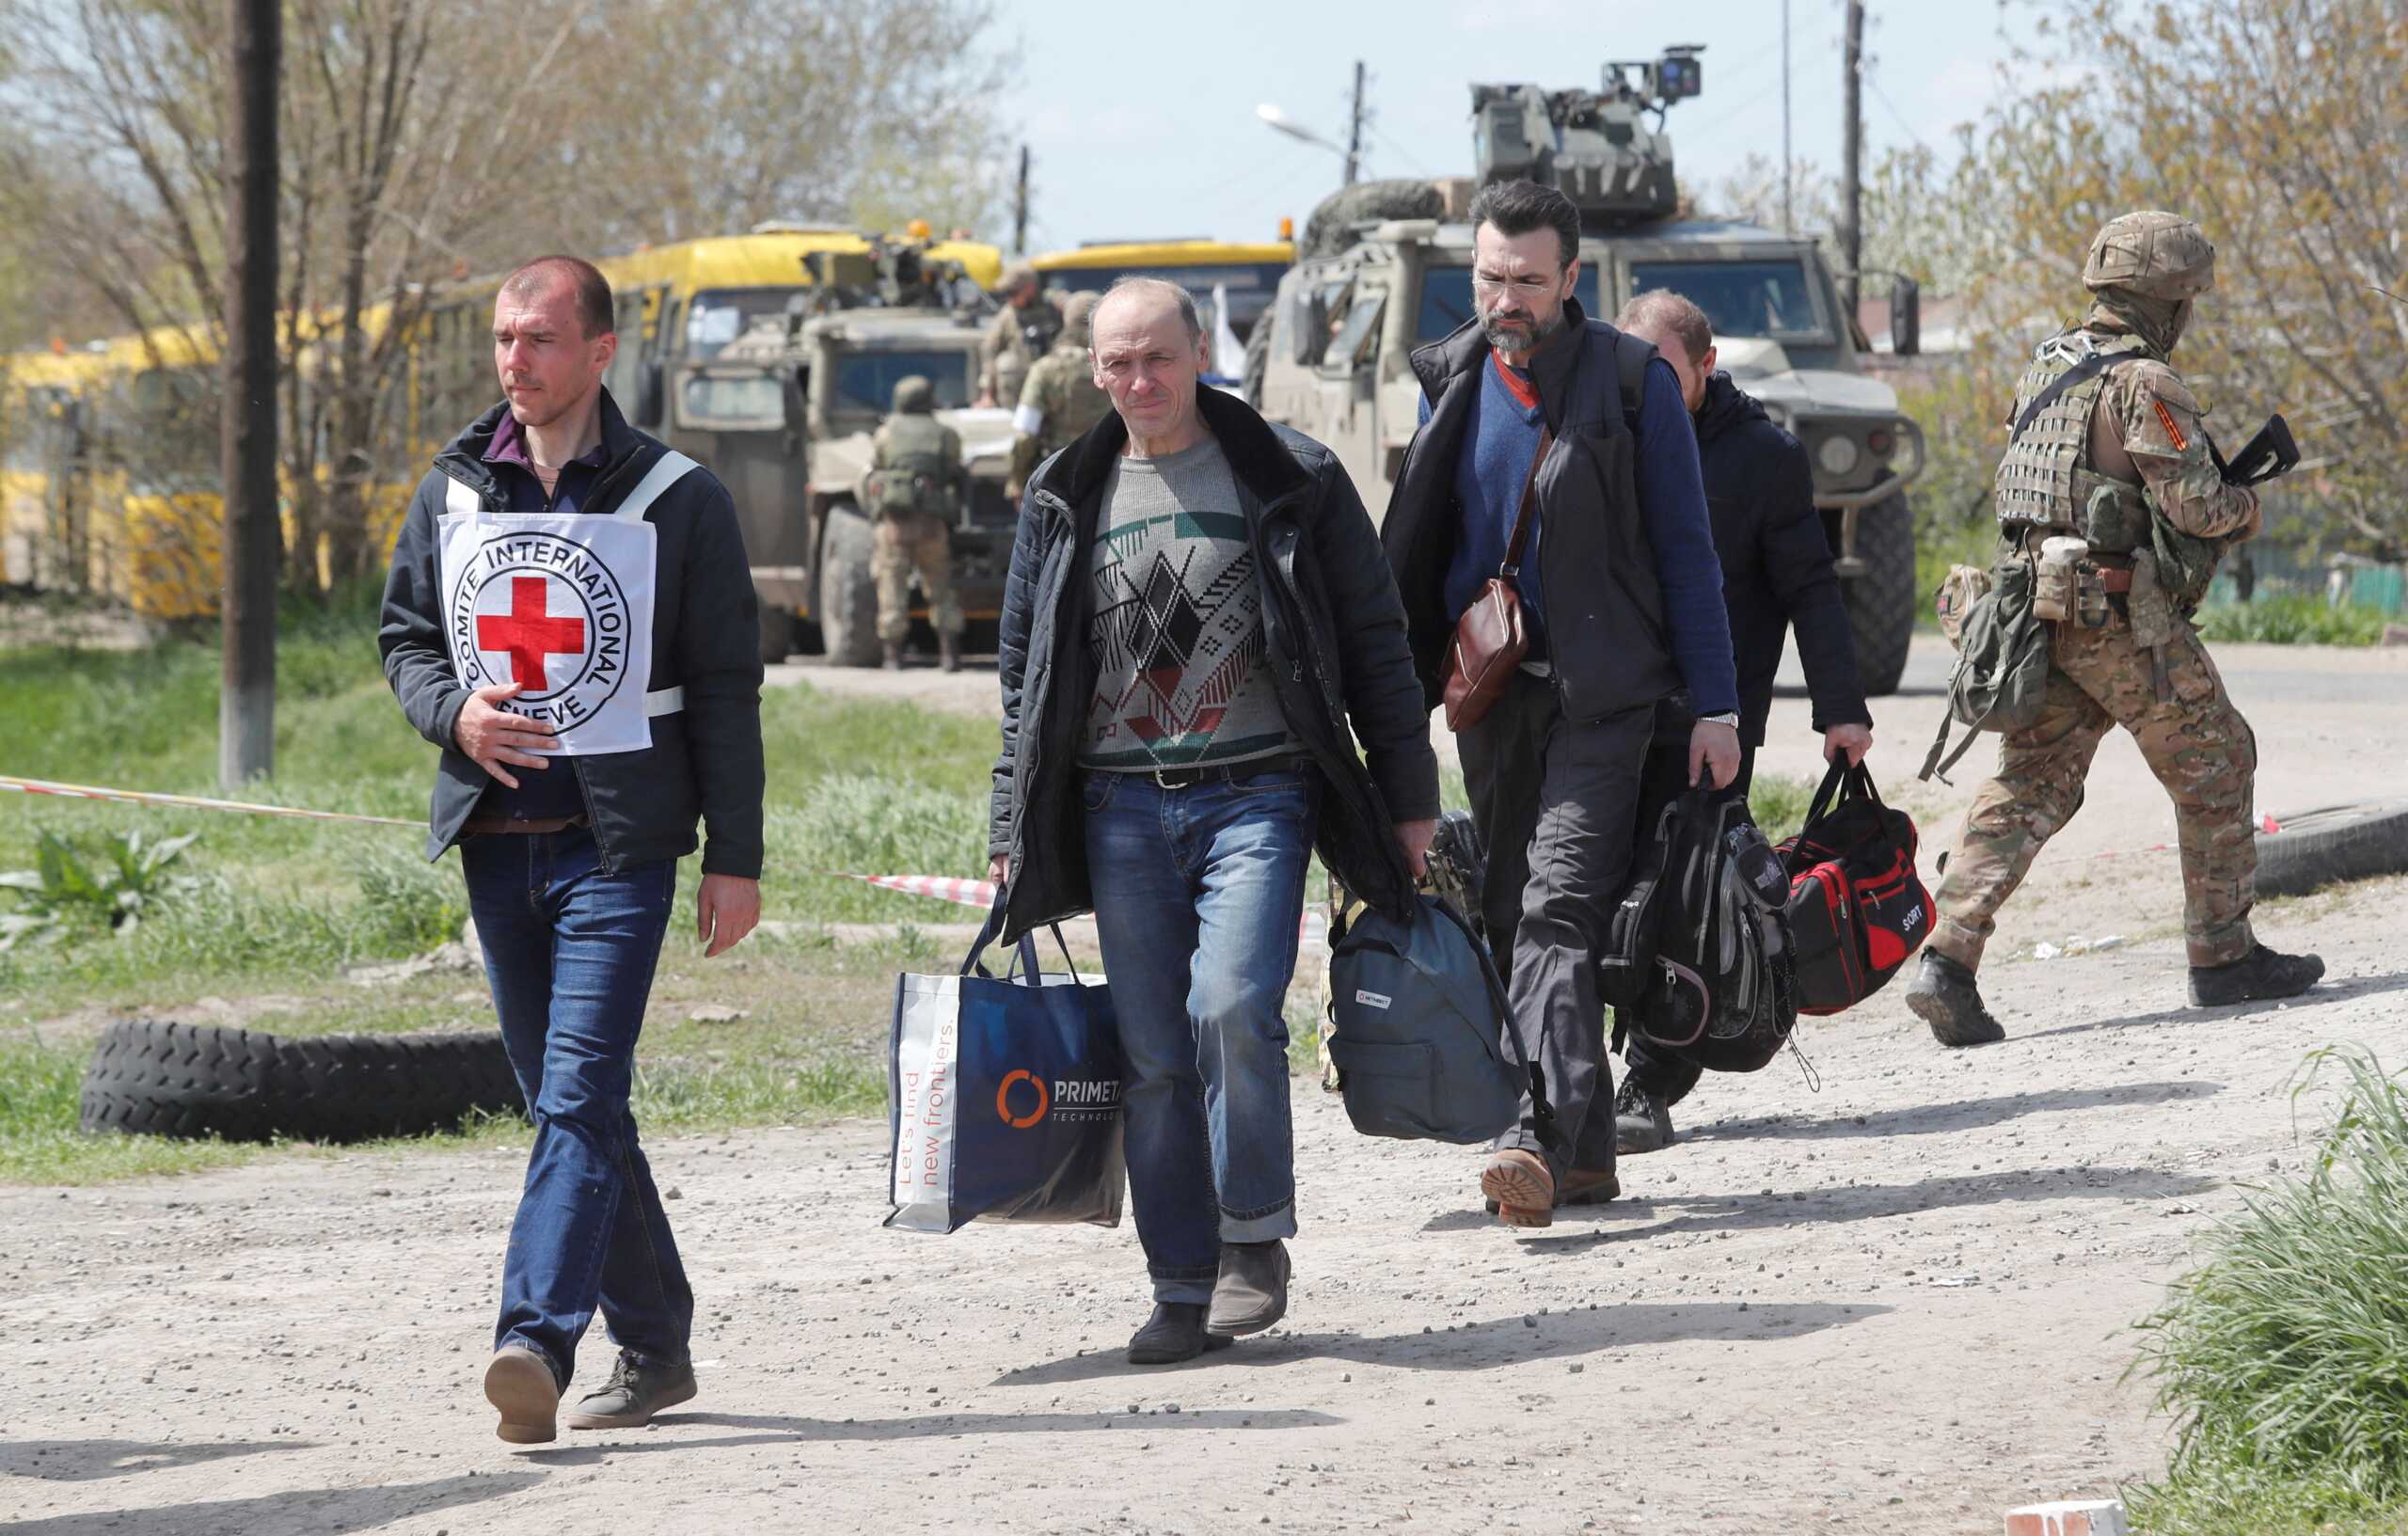 Última hora de la guerra en Ucrania, en directo | Zelenski: “El lunes continuará la evacuación de civiles en Mariupol si se dan las condiciones necesarias”